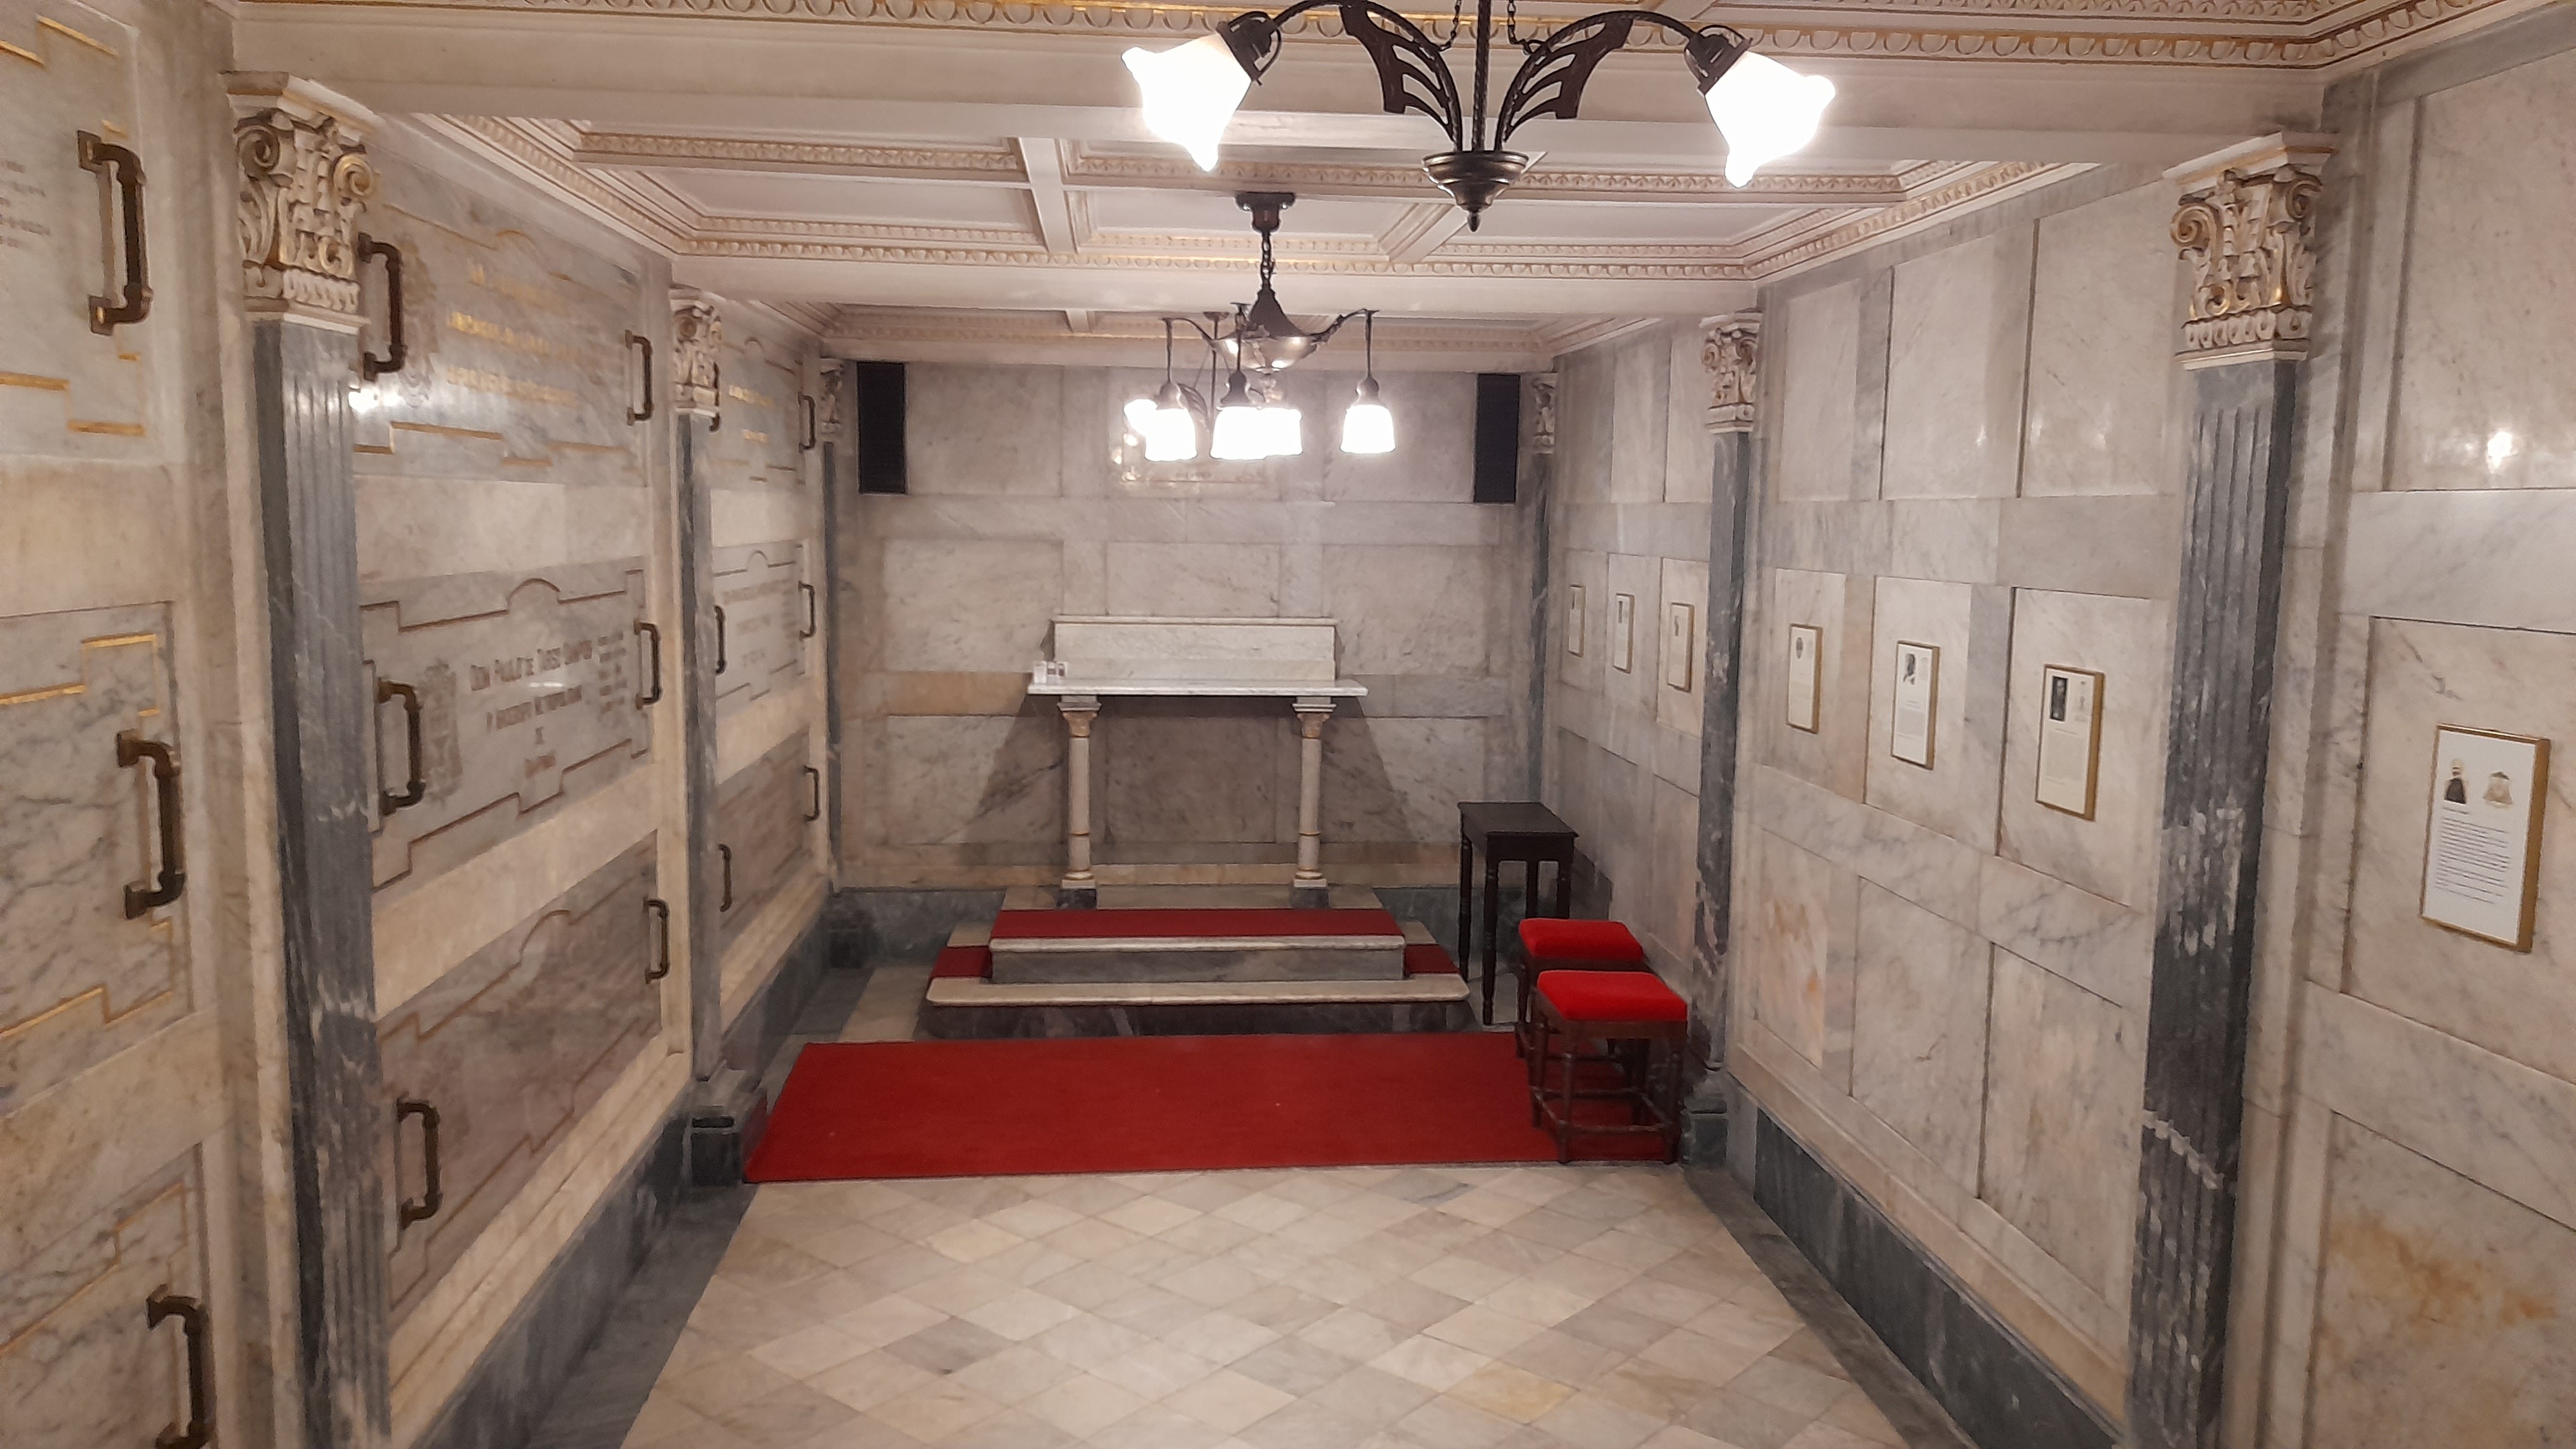 Vídeo revela como é a cripta da Catedral Metropolitana de Campinas; veja imagens